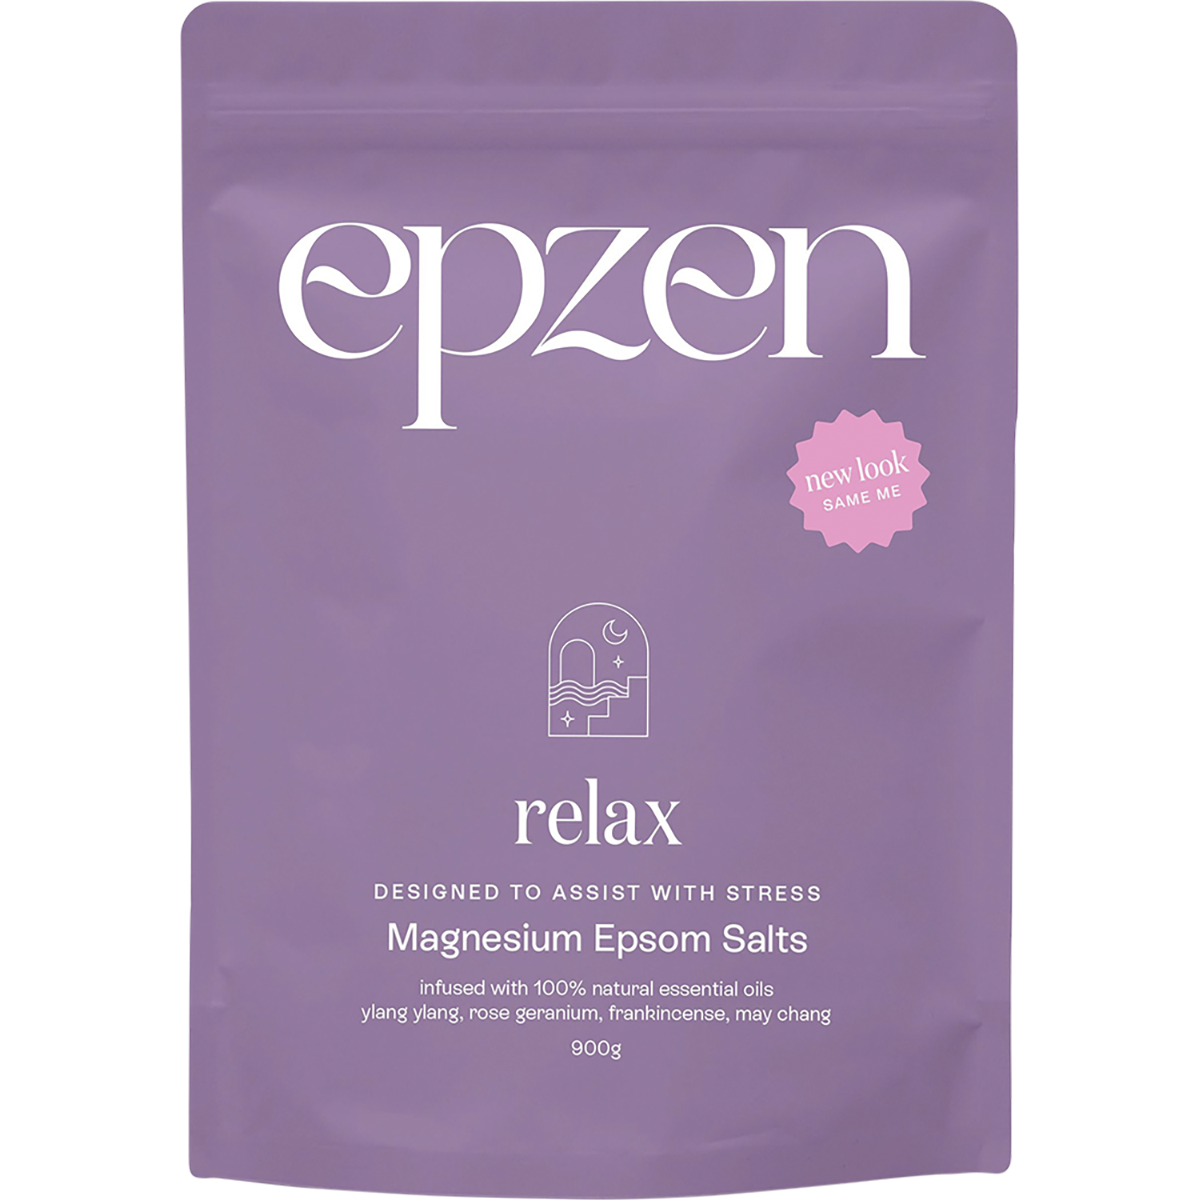 Epzen - Relax Magnesium Epsom Salts